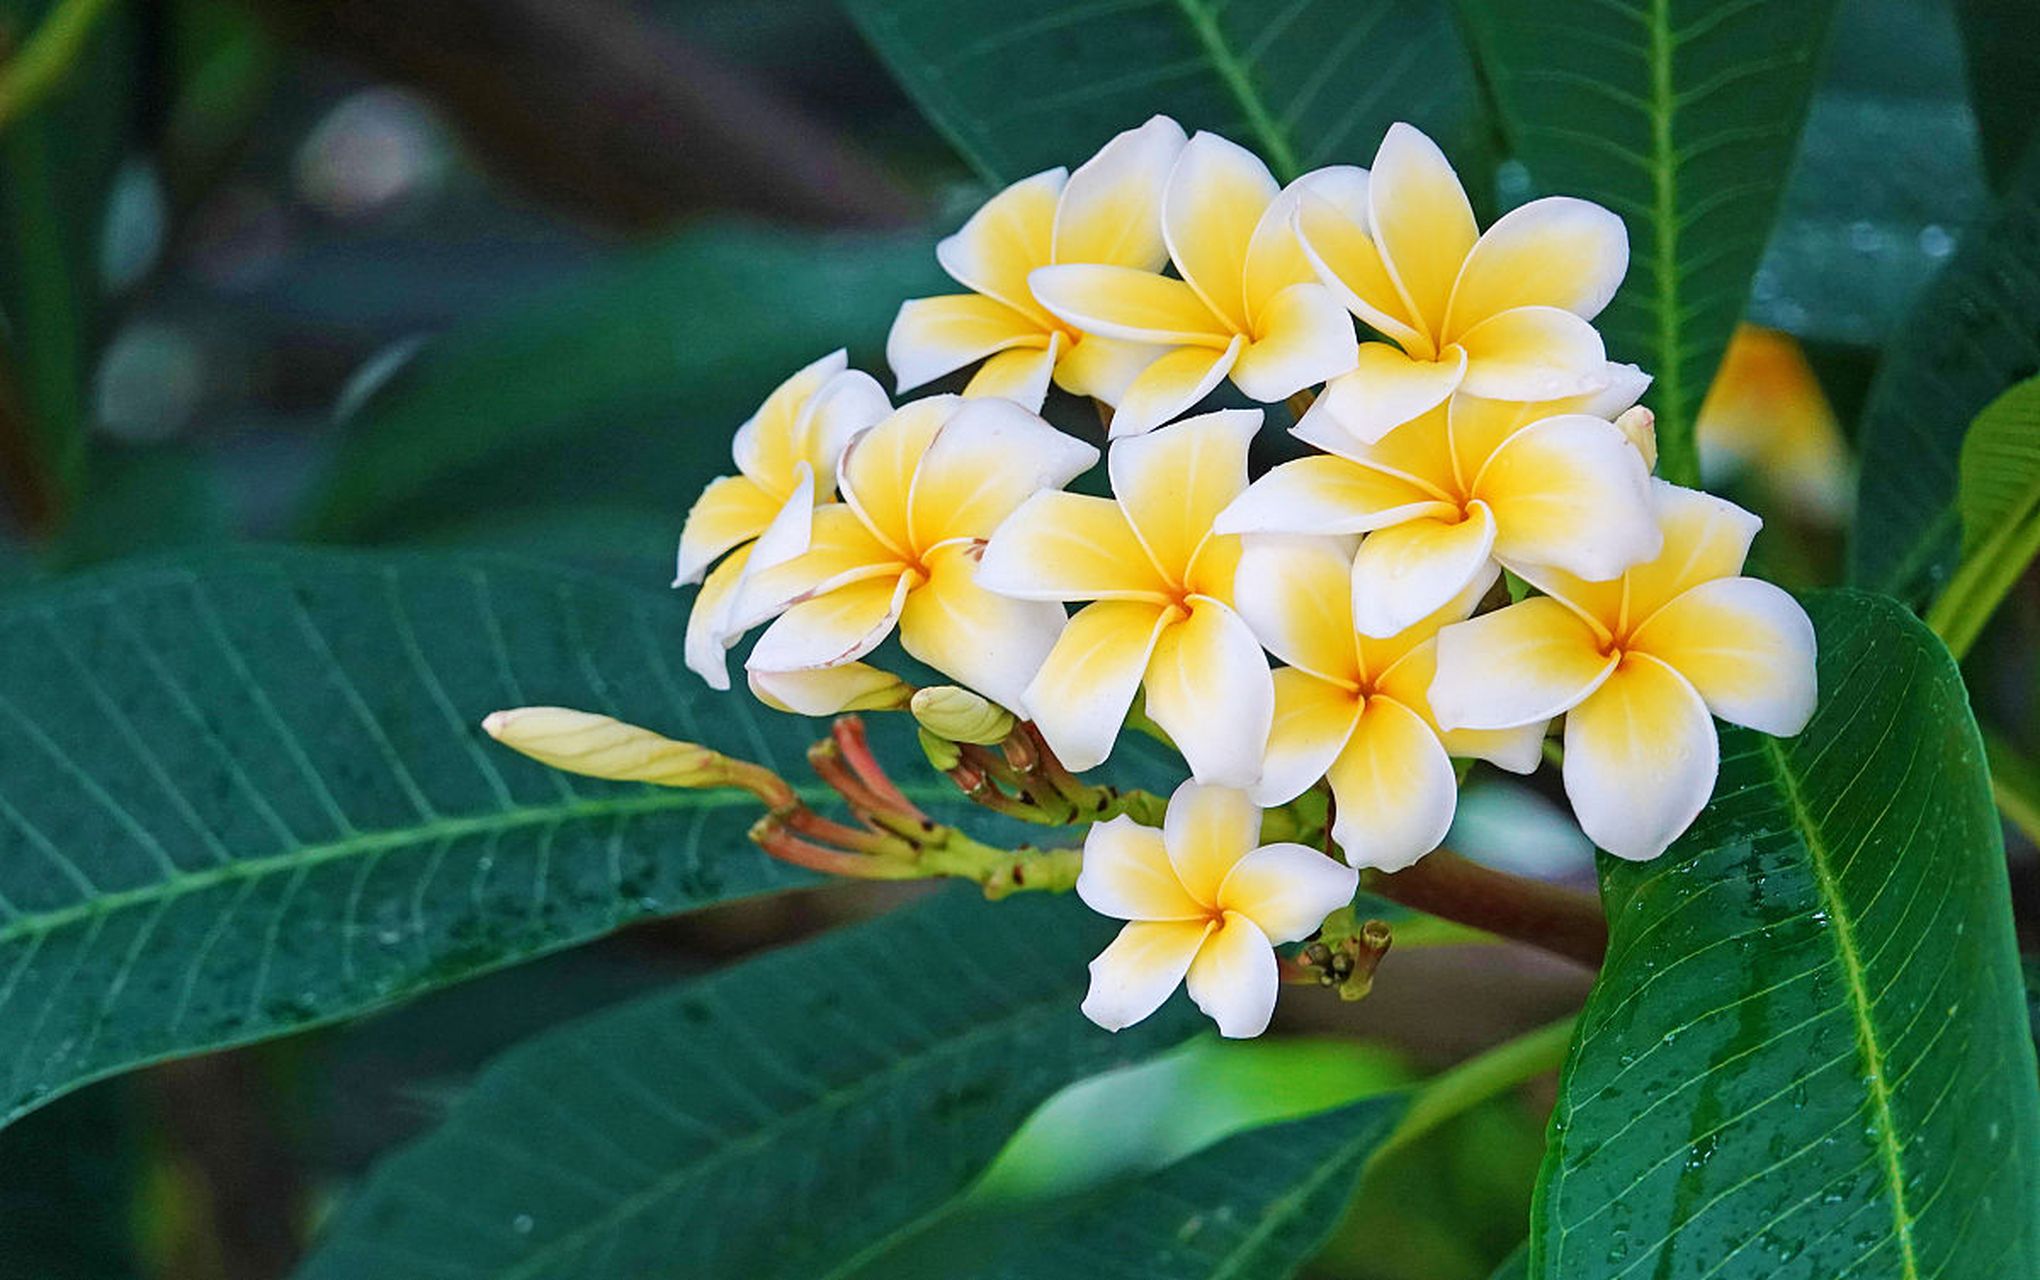 越南国花——鸡蛋花的美丽与文化象征  在东南亚的热带雨林中,盛开着